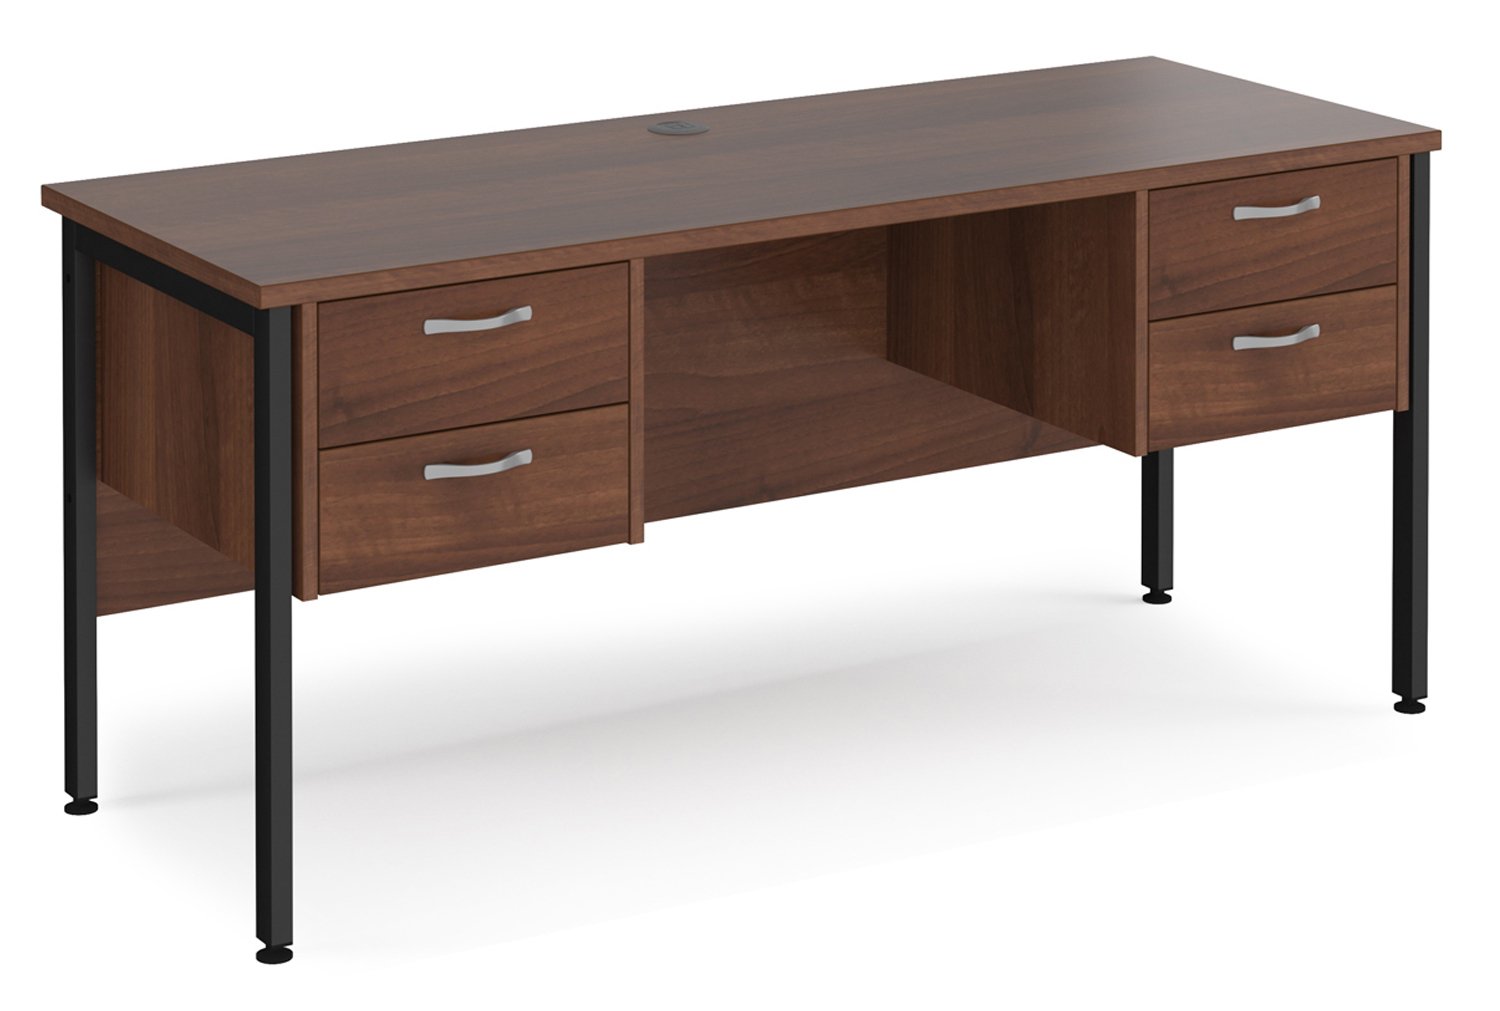 Value Line Deluxe H-Leg Narrow Rectangular Office Desk 2+2 Drawers (Black Legs), 160w60dx73h (cm), Walnut, Fully Installed